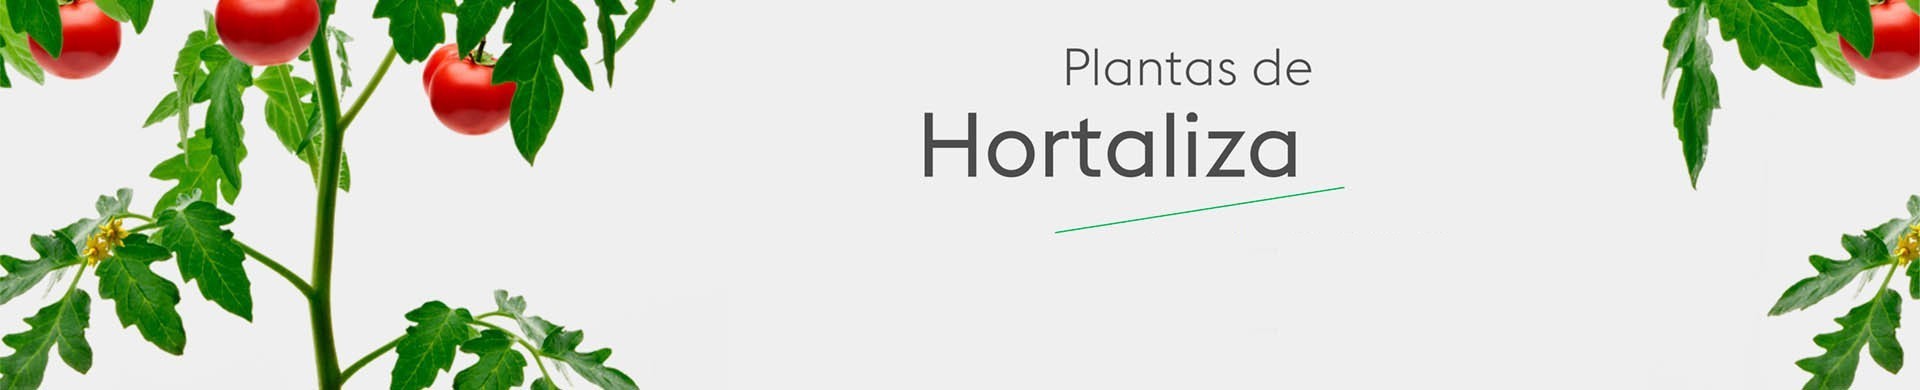 Plantas de Huerto - Comprar Plantas de Hortalizas | El Huerto Deitana 